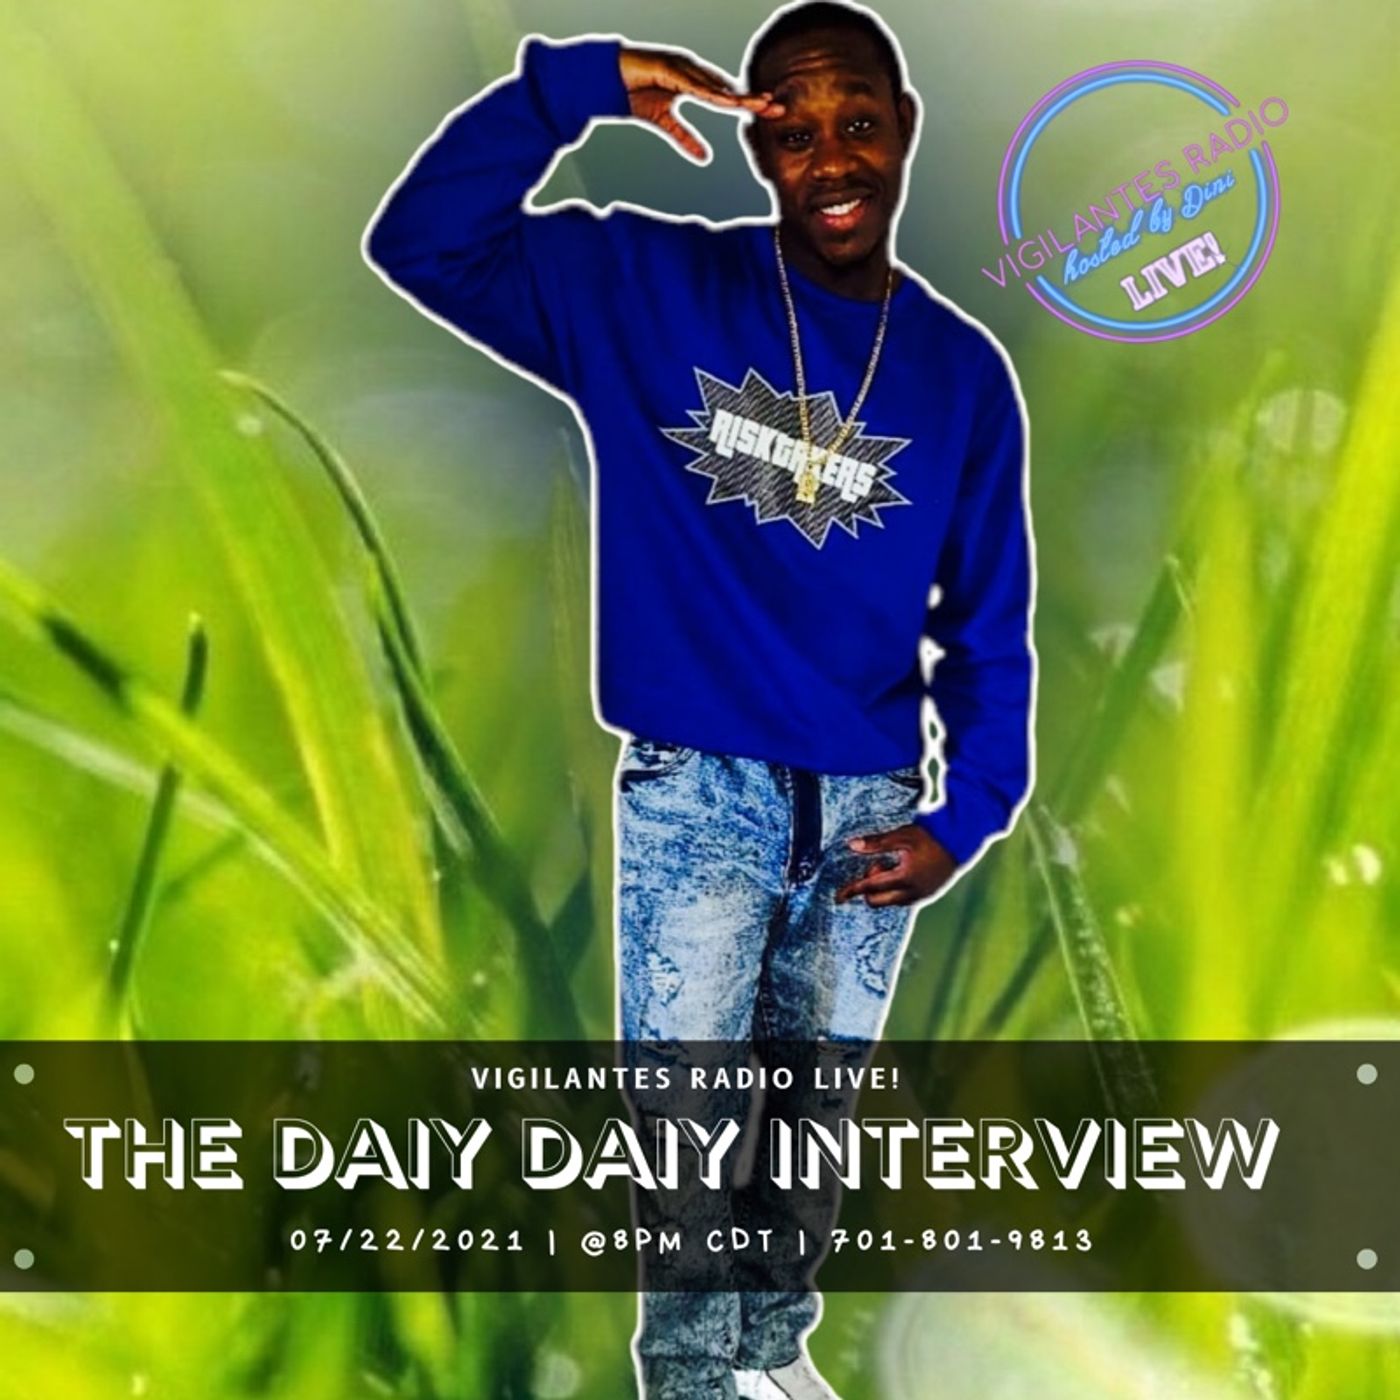 The Daiy Daiy Interview. Image